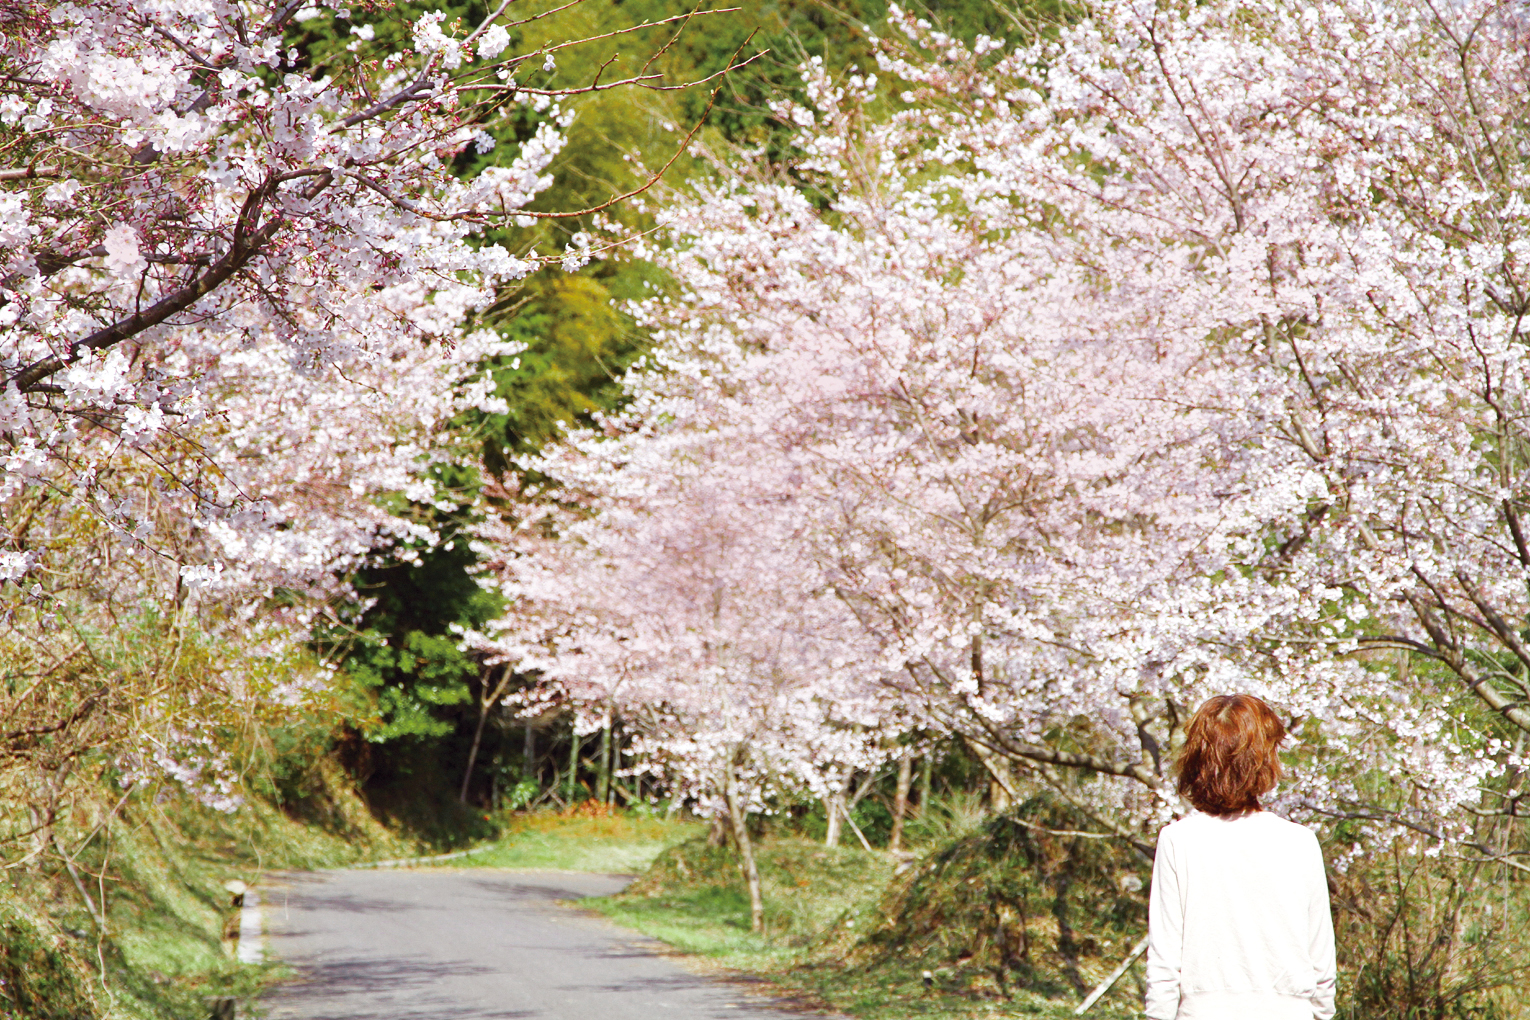 ⻑光円陣の滝桜公園の桜